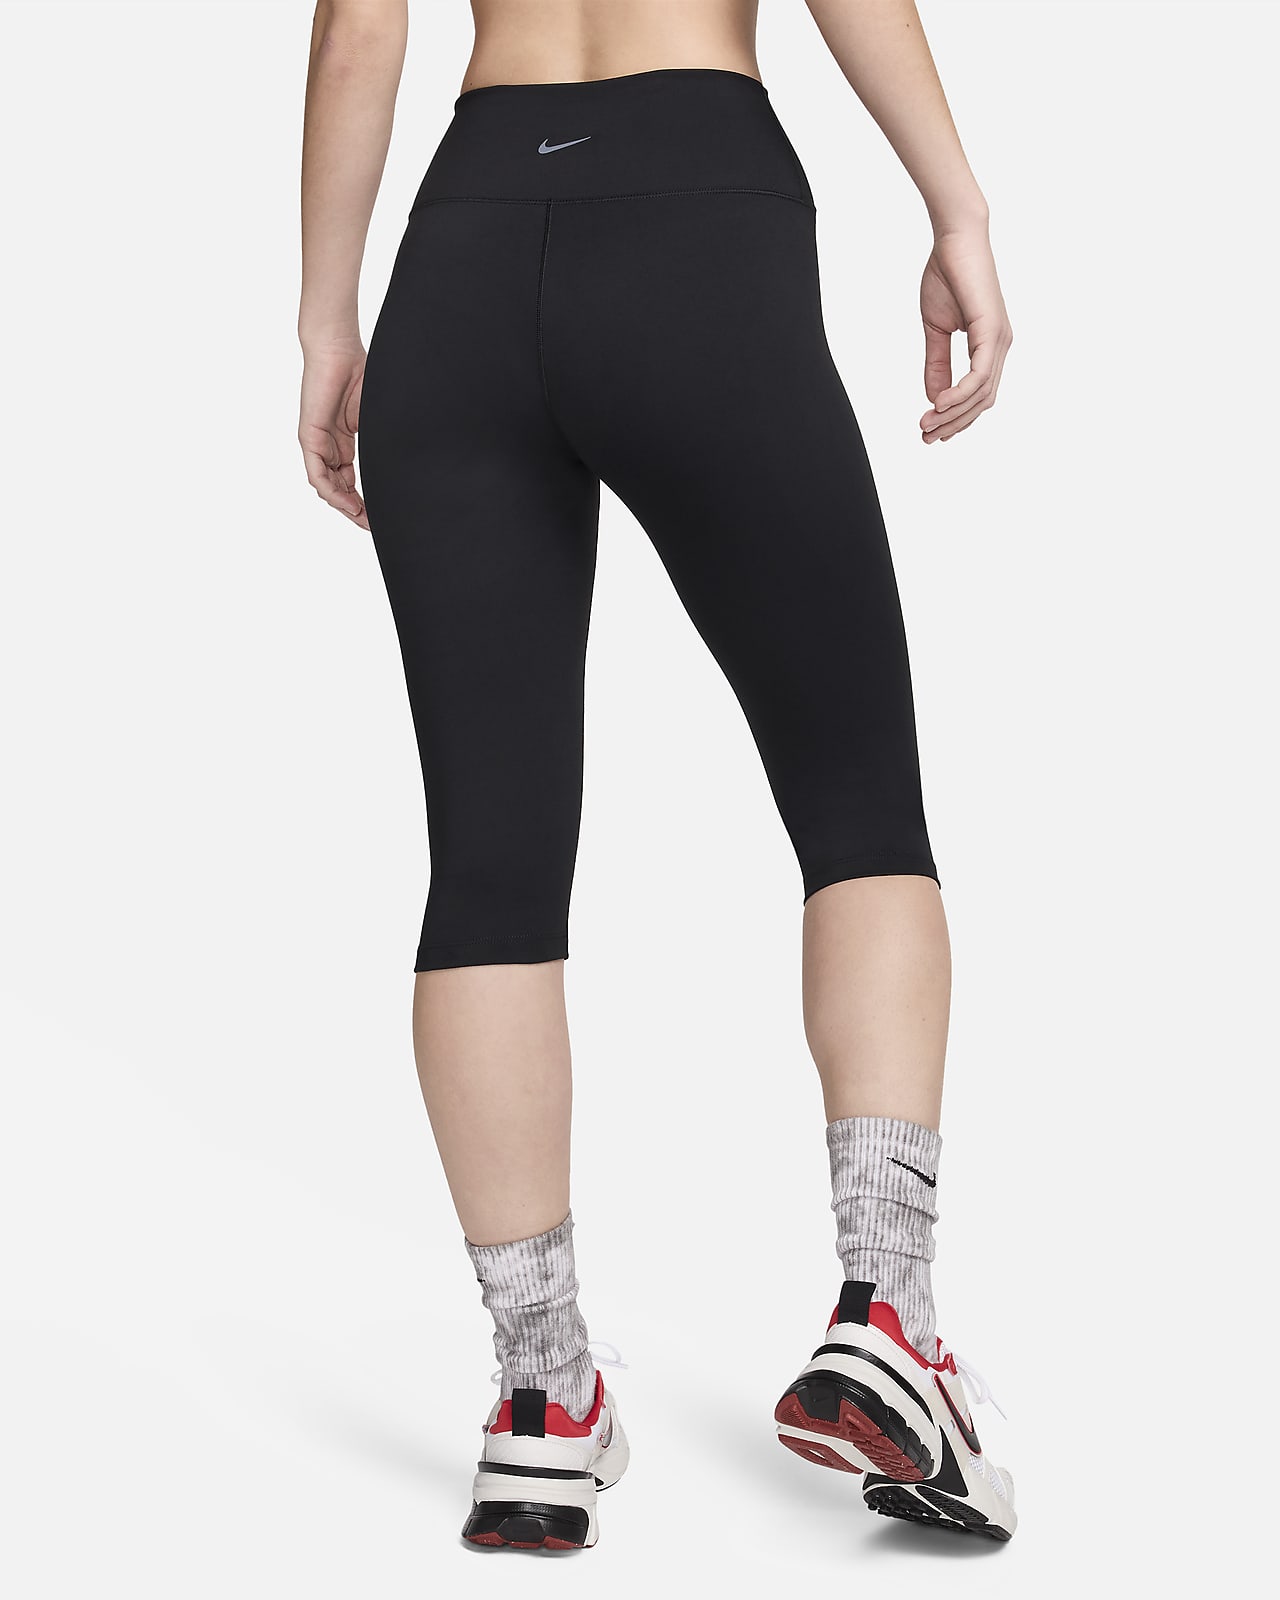 Nike One Women's High-Waisted Capri Leggings. Nike ZA